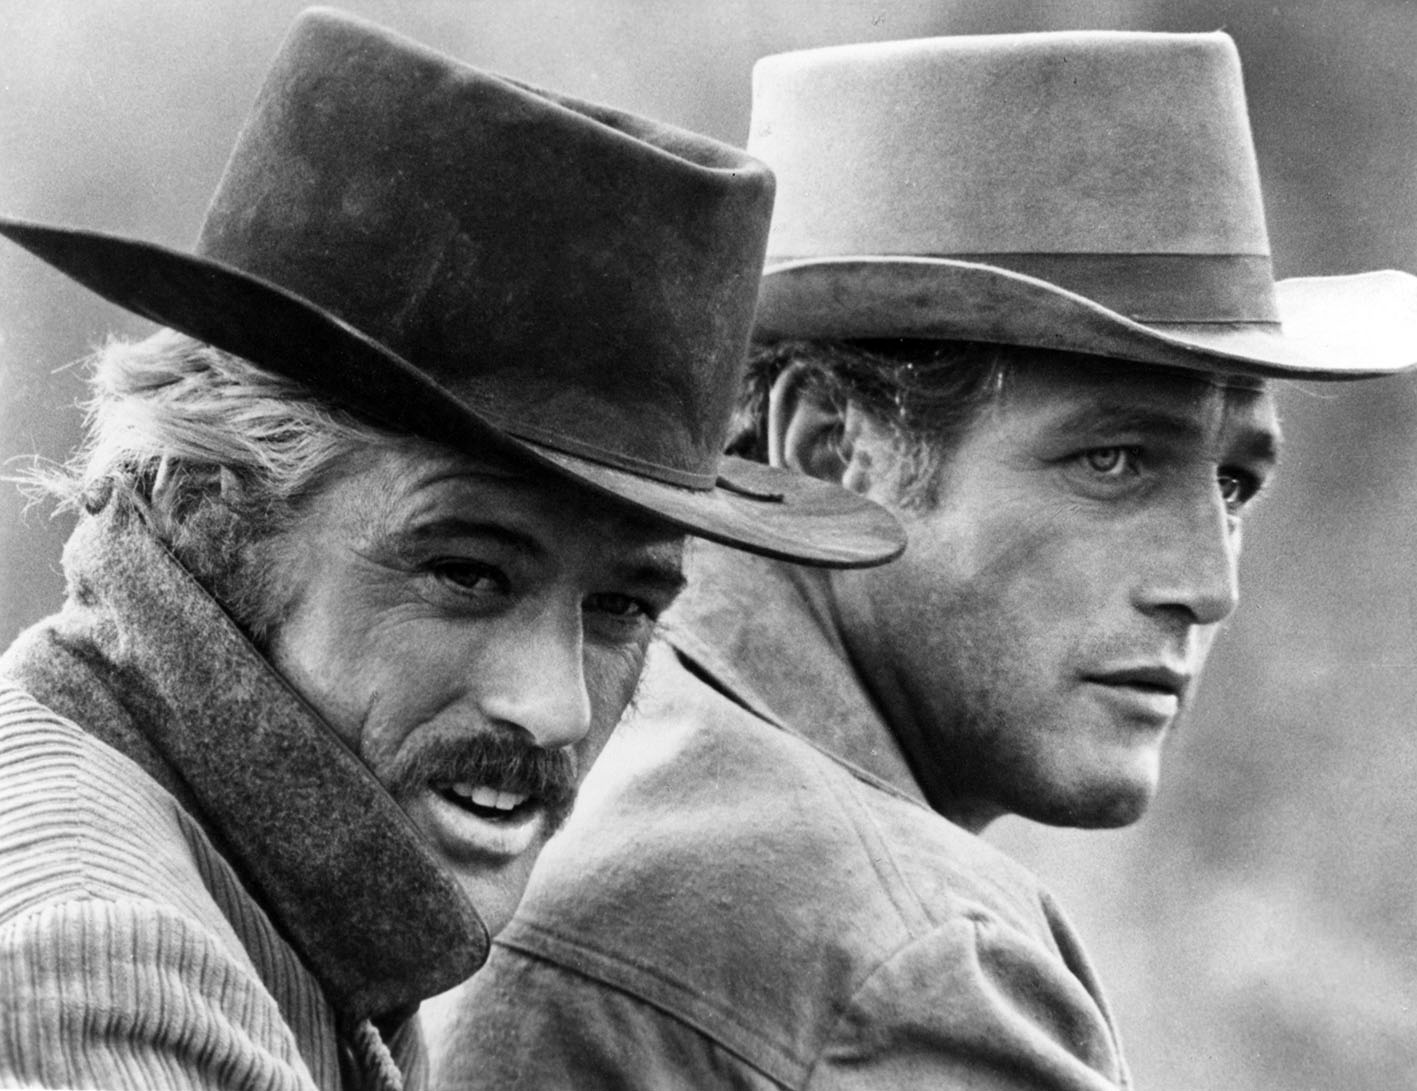 Στον ρόλο του Butch Cassidy ο ηθοποιός Paul Newman και στο ρόλο του Sundance Kid ο Robert Redford) σε μια σκηνή από την ταινία του 1969, "Butch Casssidy And The Sundance Kid".